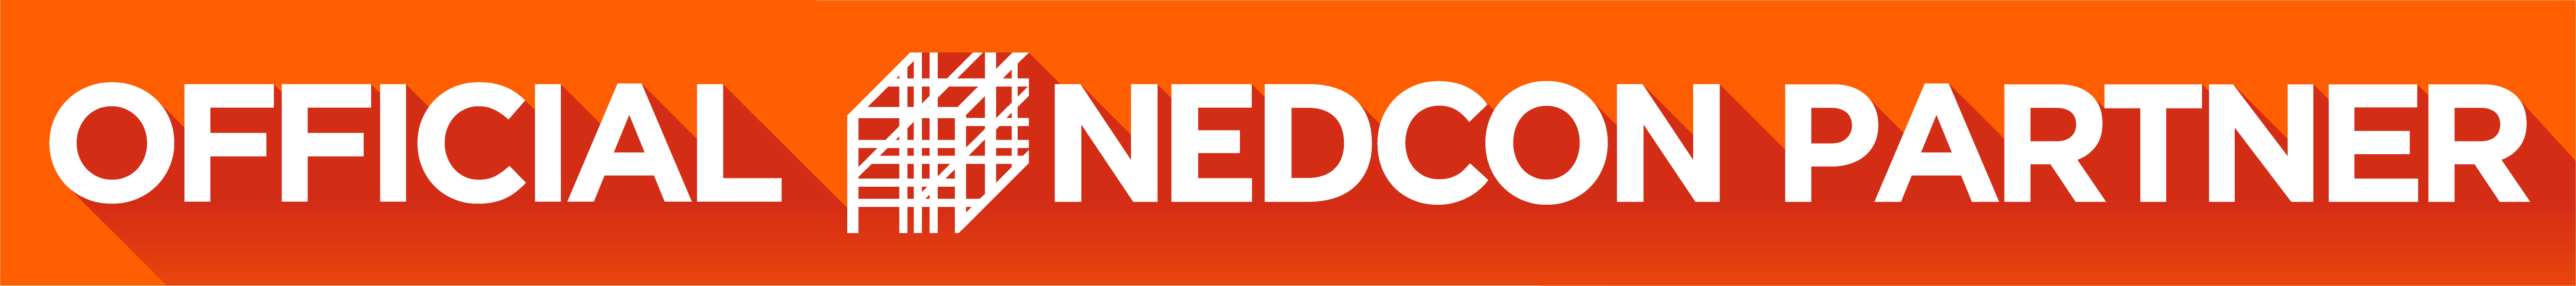 NEDCO-1846-logo-officialpartner-oranje-df